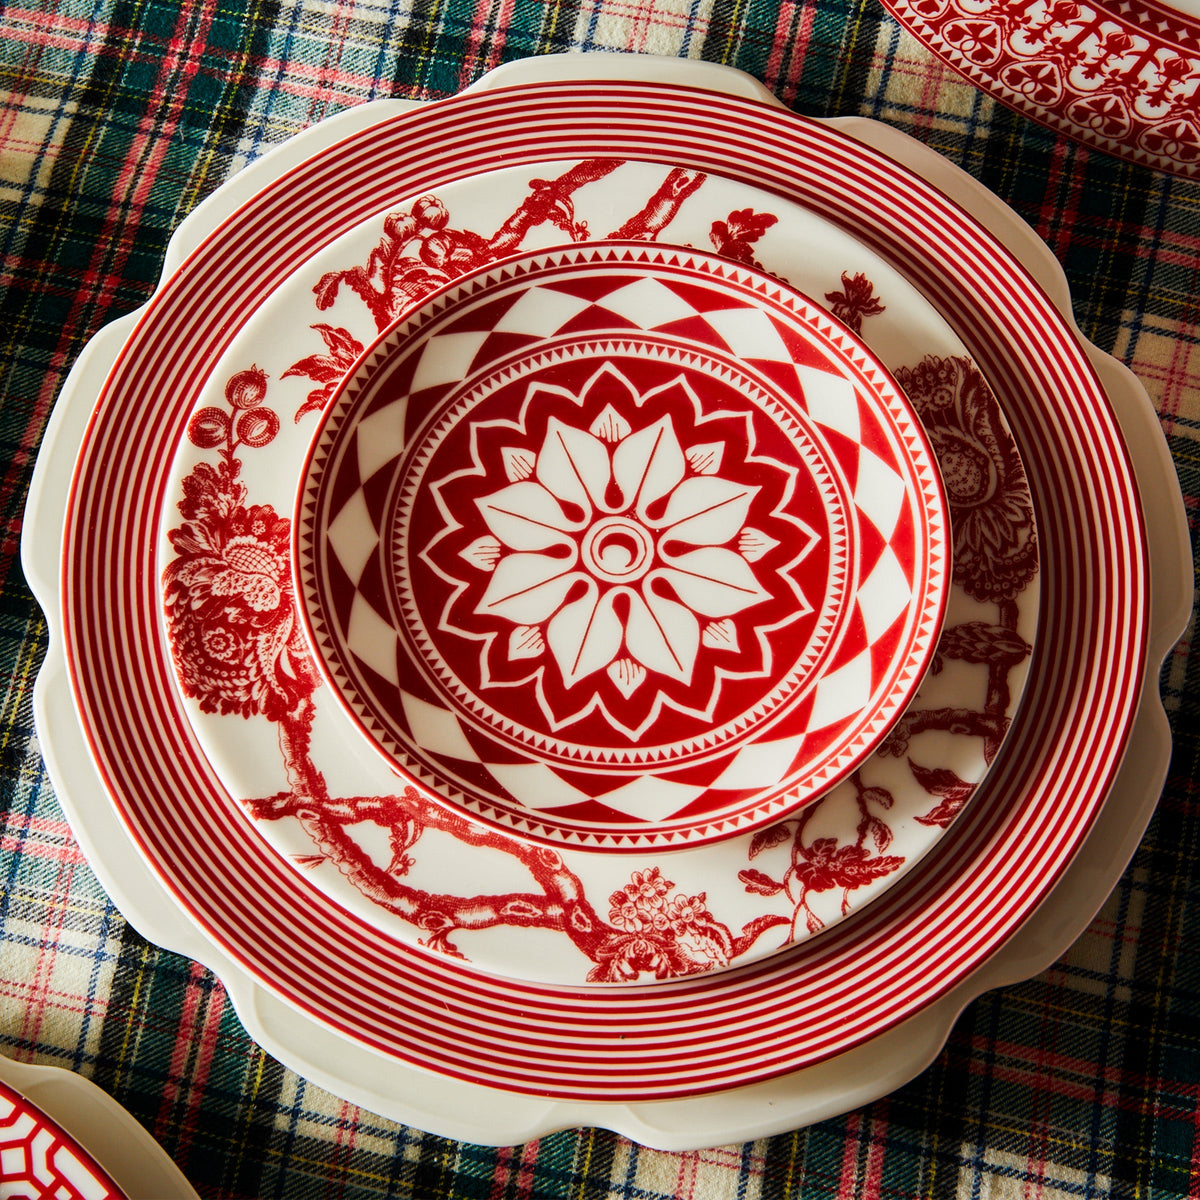 A Fez Crimson Canapé Plate on a plaid tablecloth from Caskata Artisanal Home.